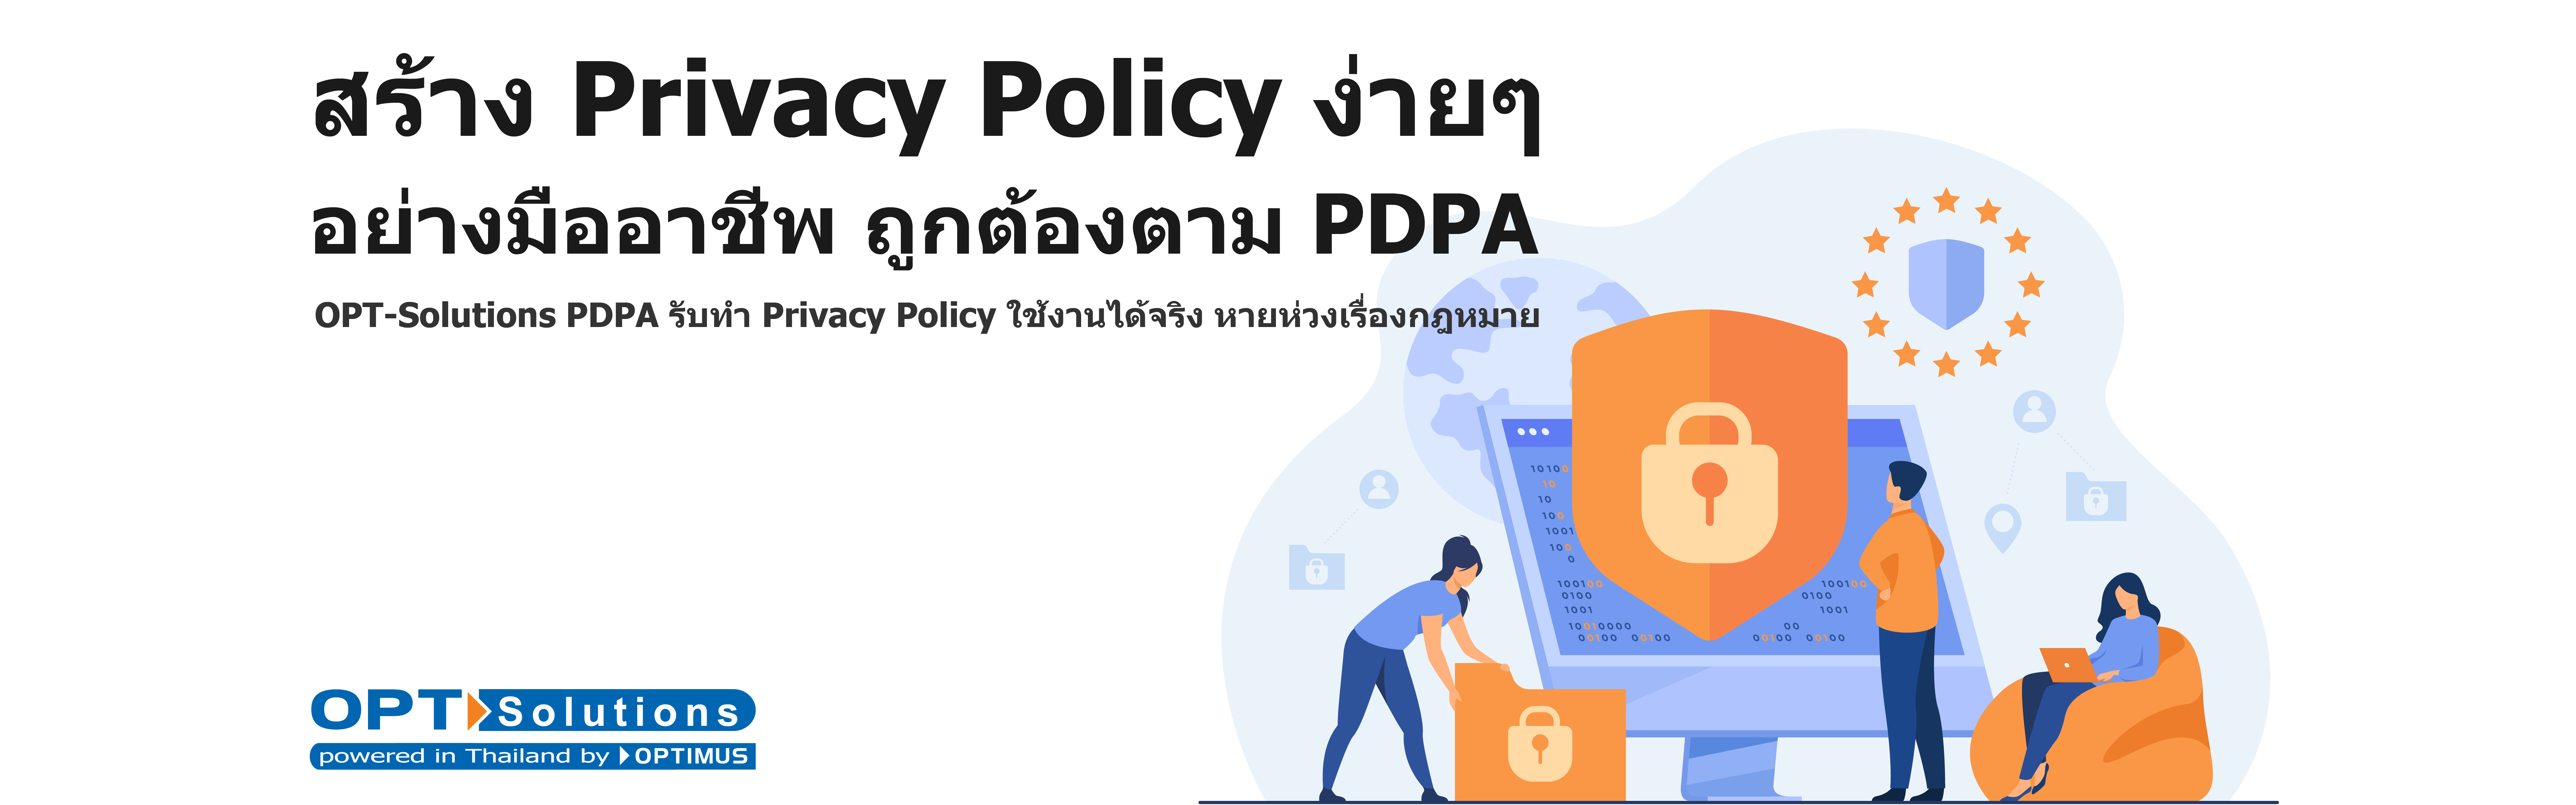 20211110 สร้าง Privacy Policy ง่ายๆ อย่างมืออาชีพ 1920x600-02